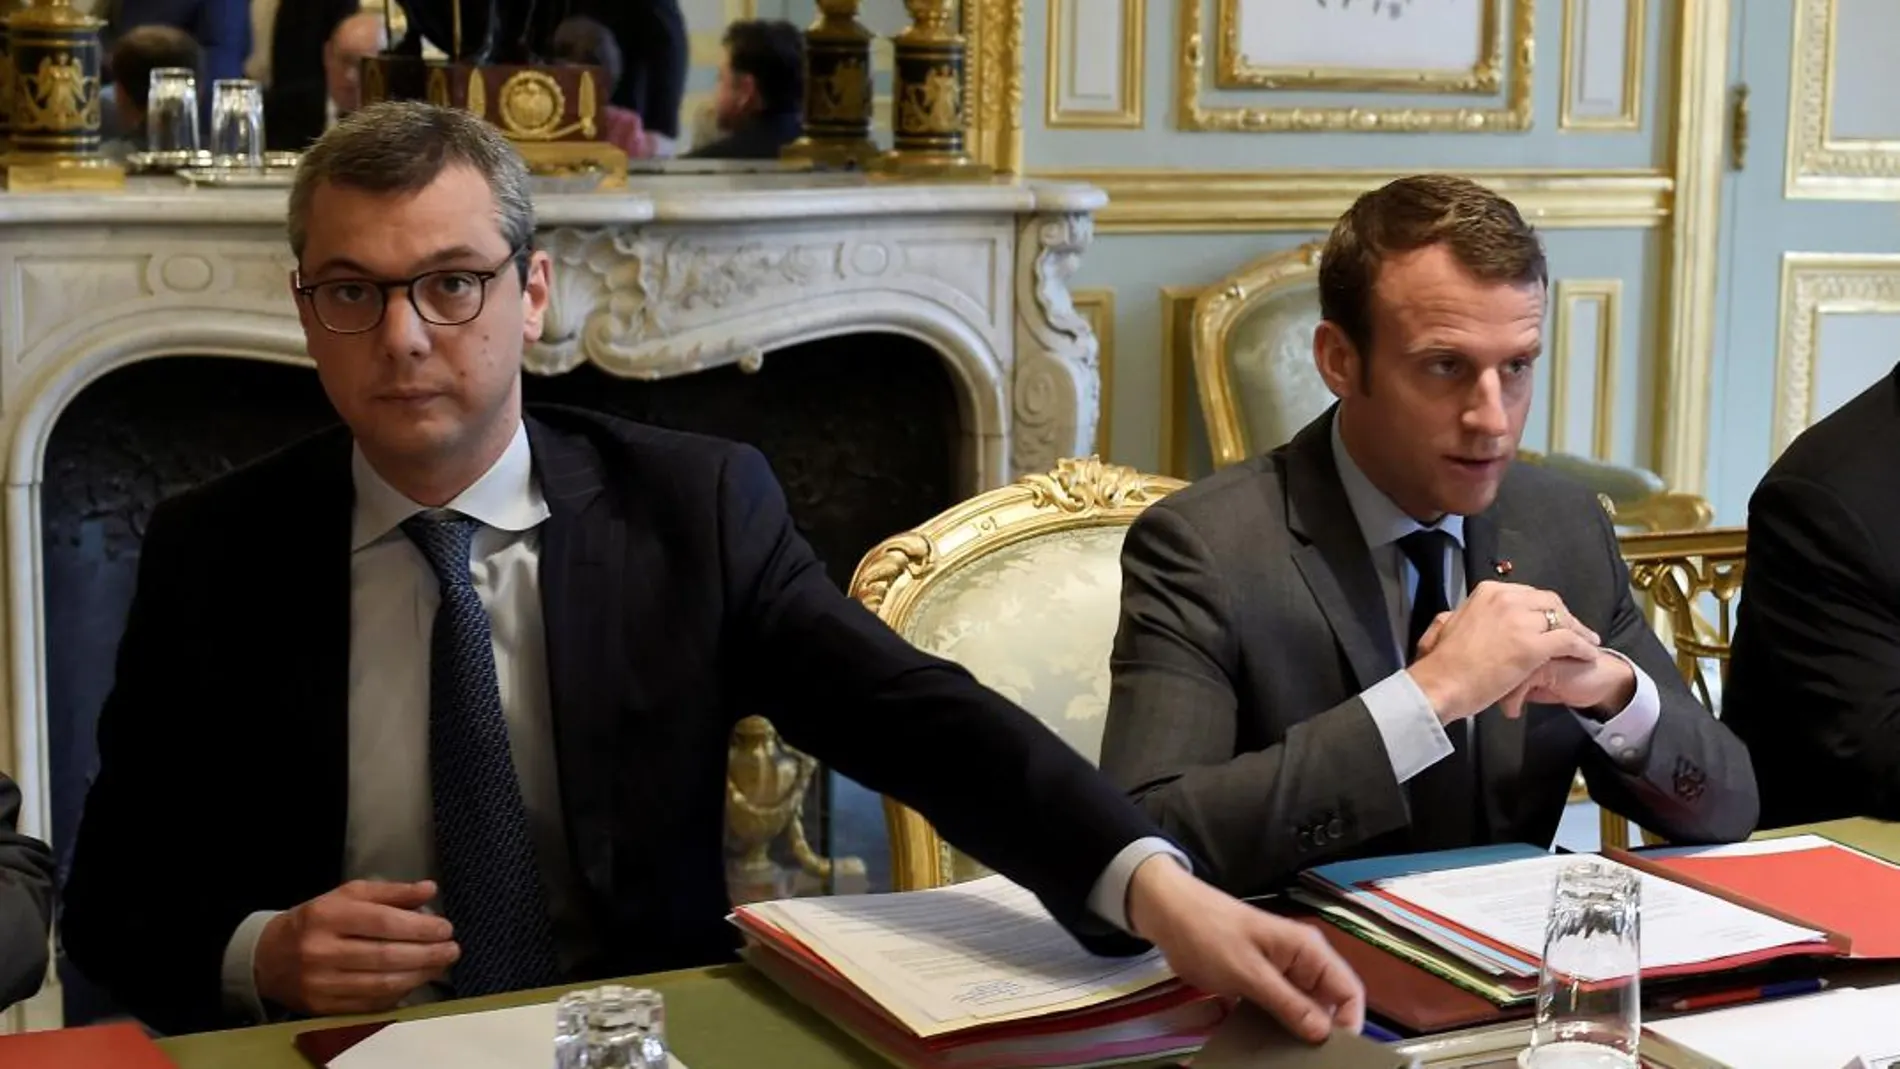 El secretario general del Elíseo, Alexis Kohler, junto al presidente francés, Emmanuel Macron, en una imagen de archivo / Reuters